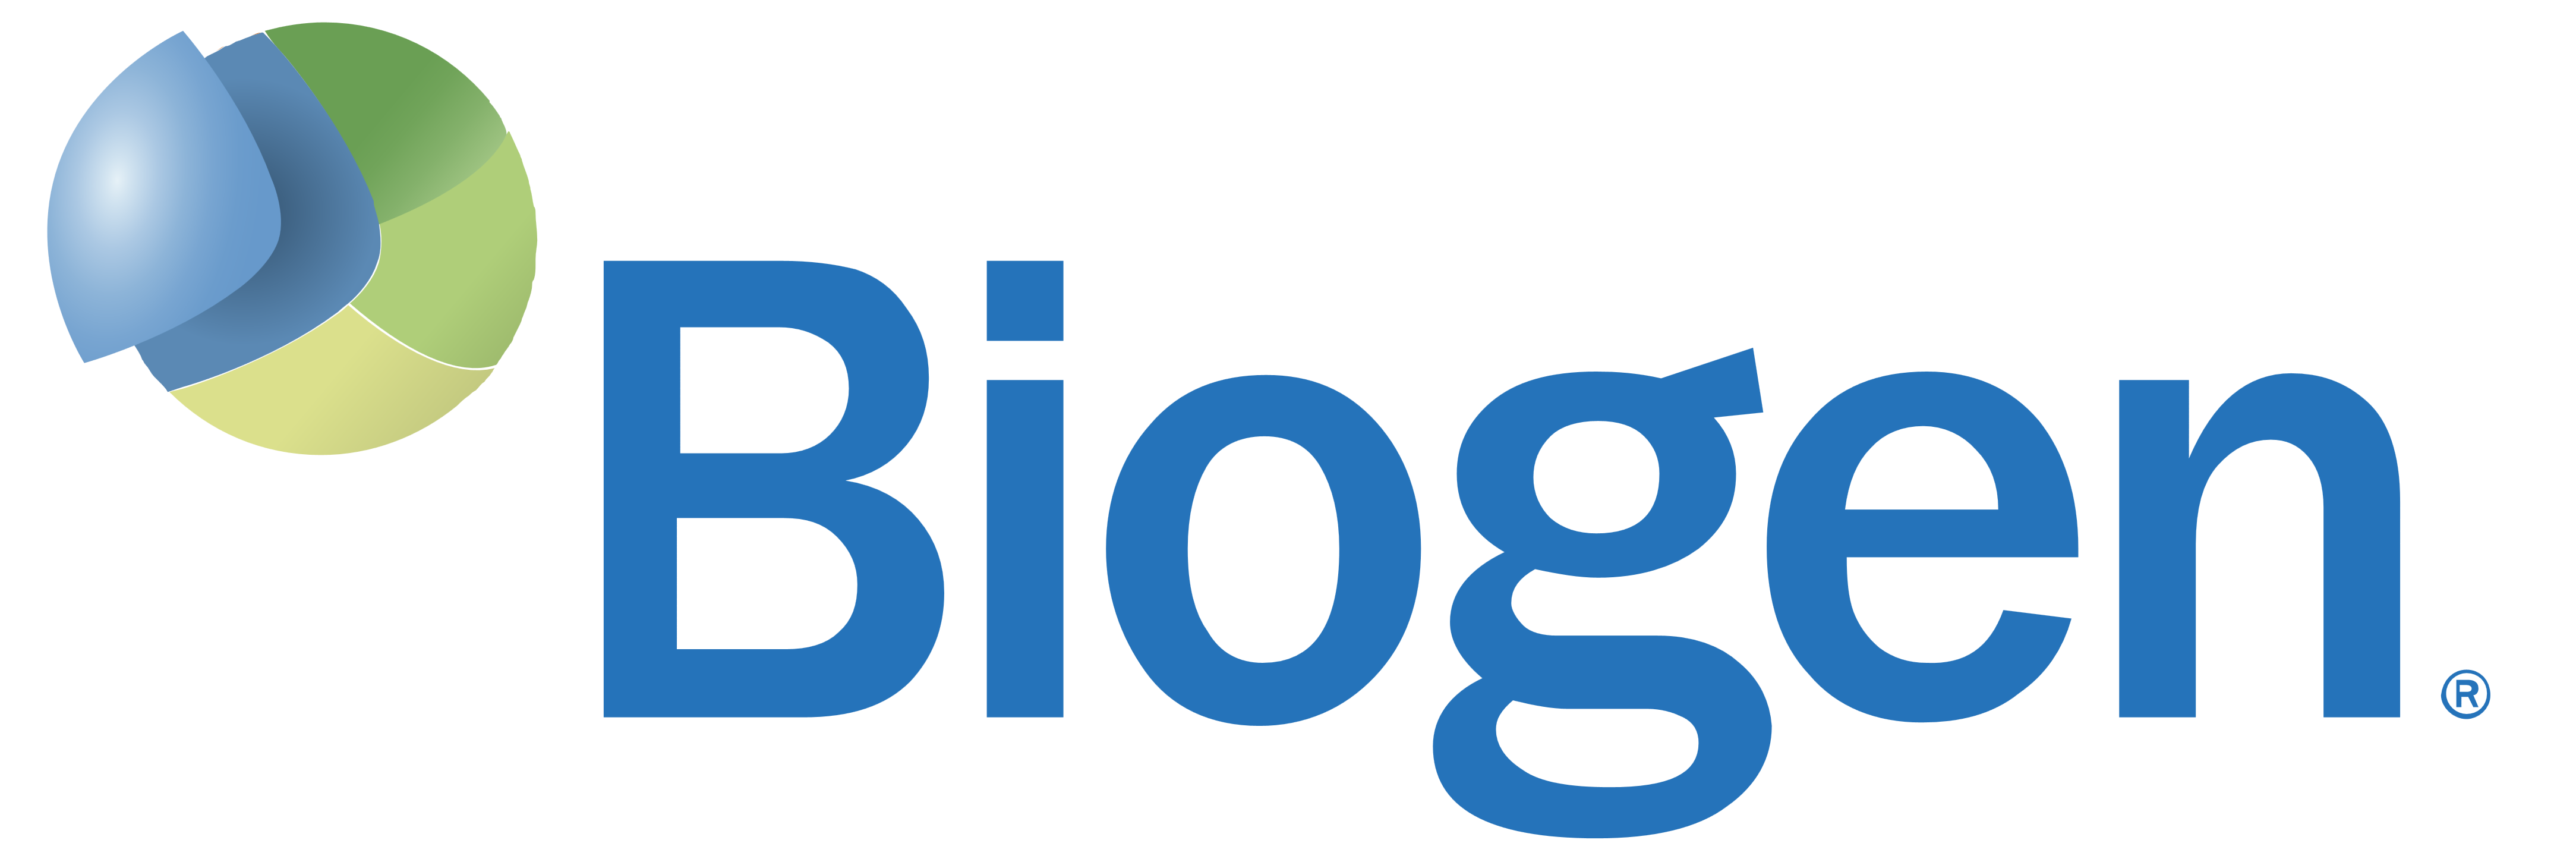 Biogen_logo